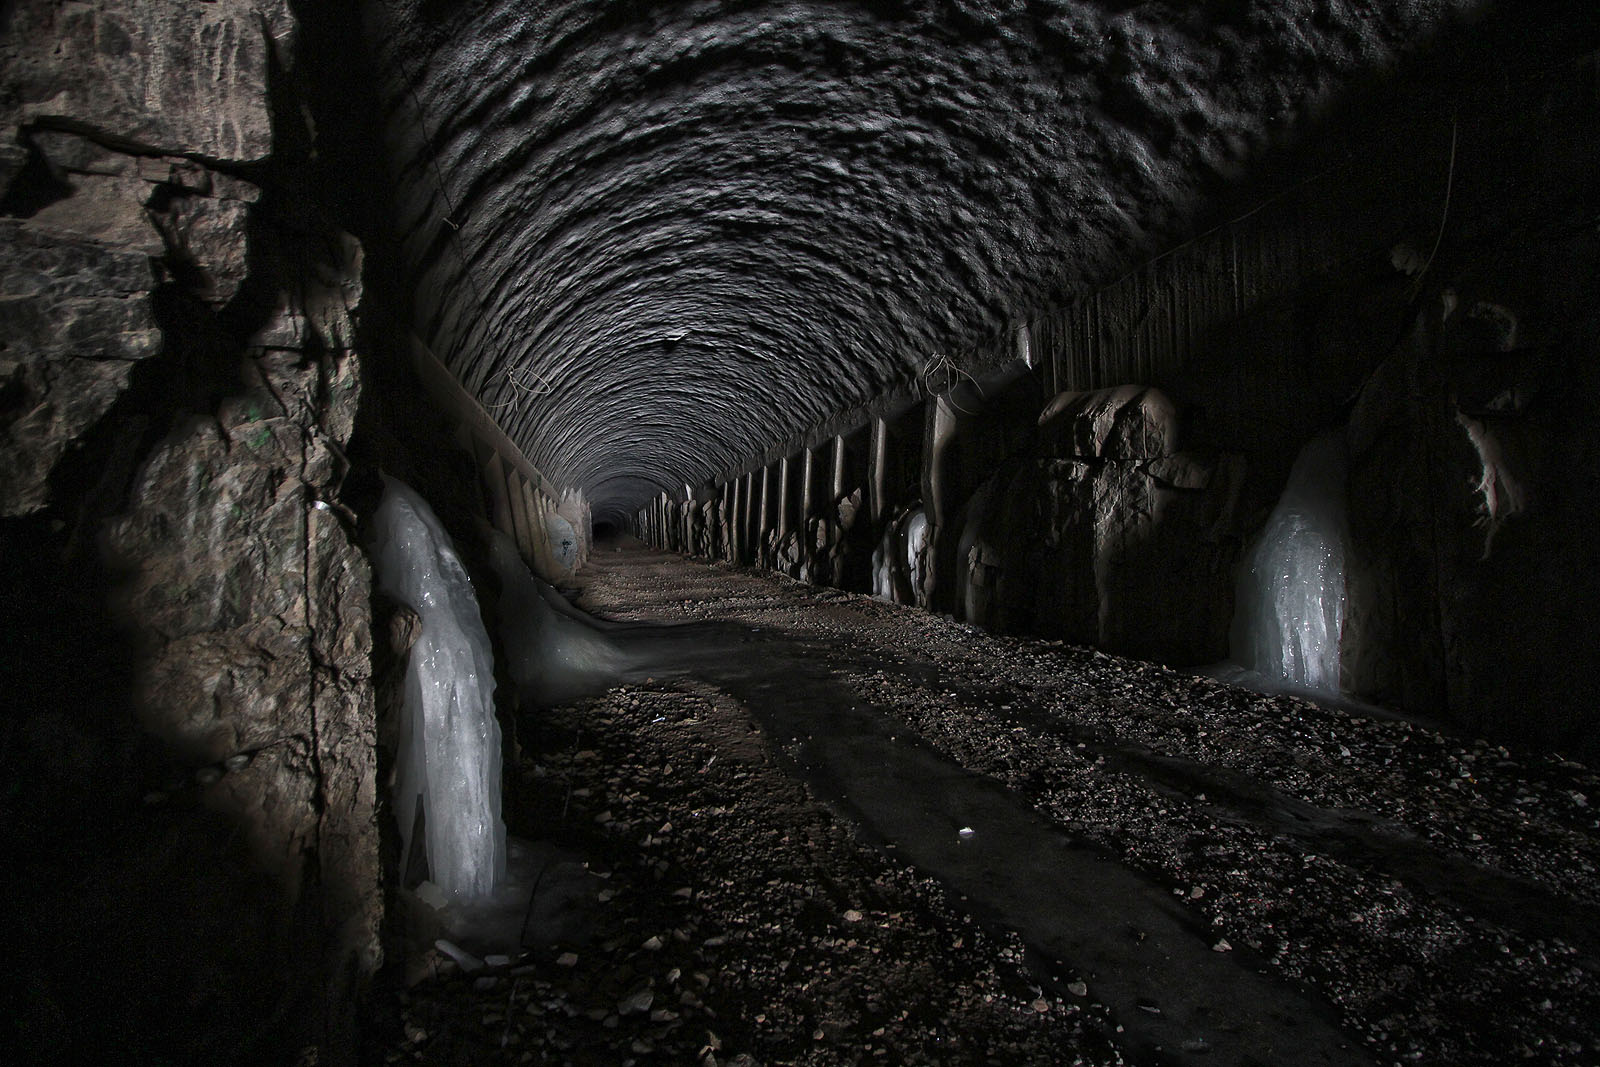 V zimě tunelem mírně profukuje, což stačí k tomu, aby i hluboko pod zemí teplota klesla do záporných hodnot. Stěny pak zdobí působivé ledopády.